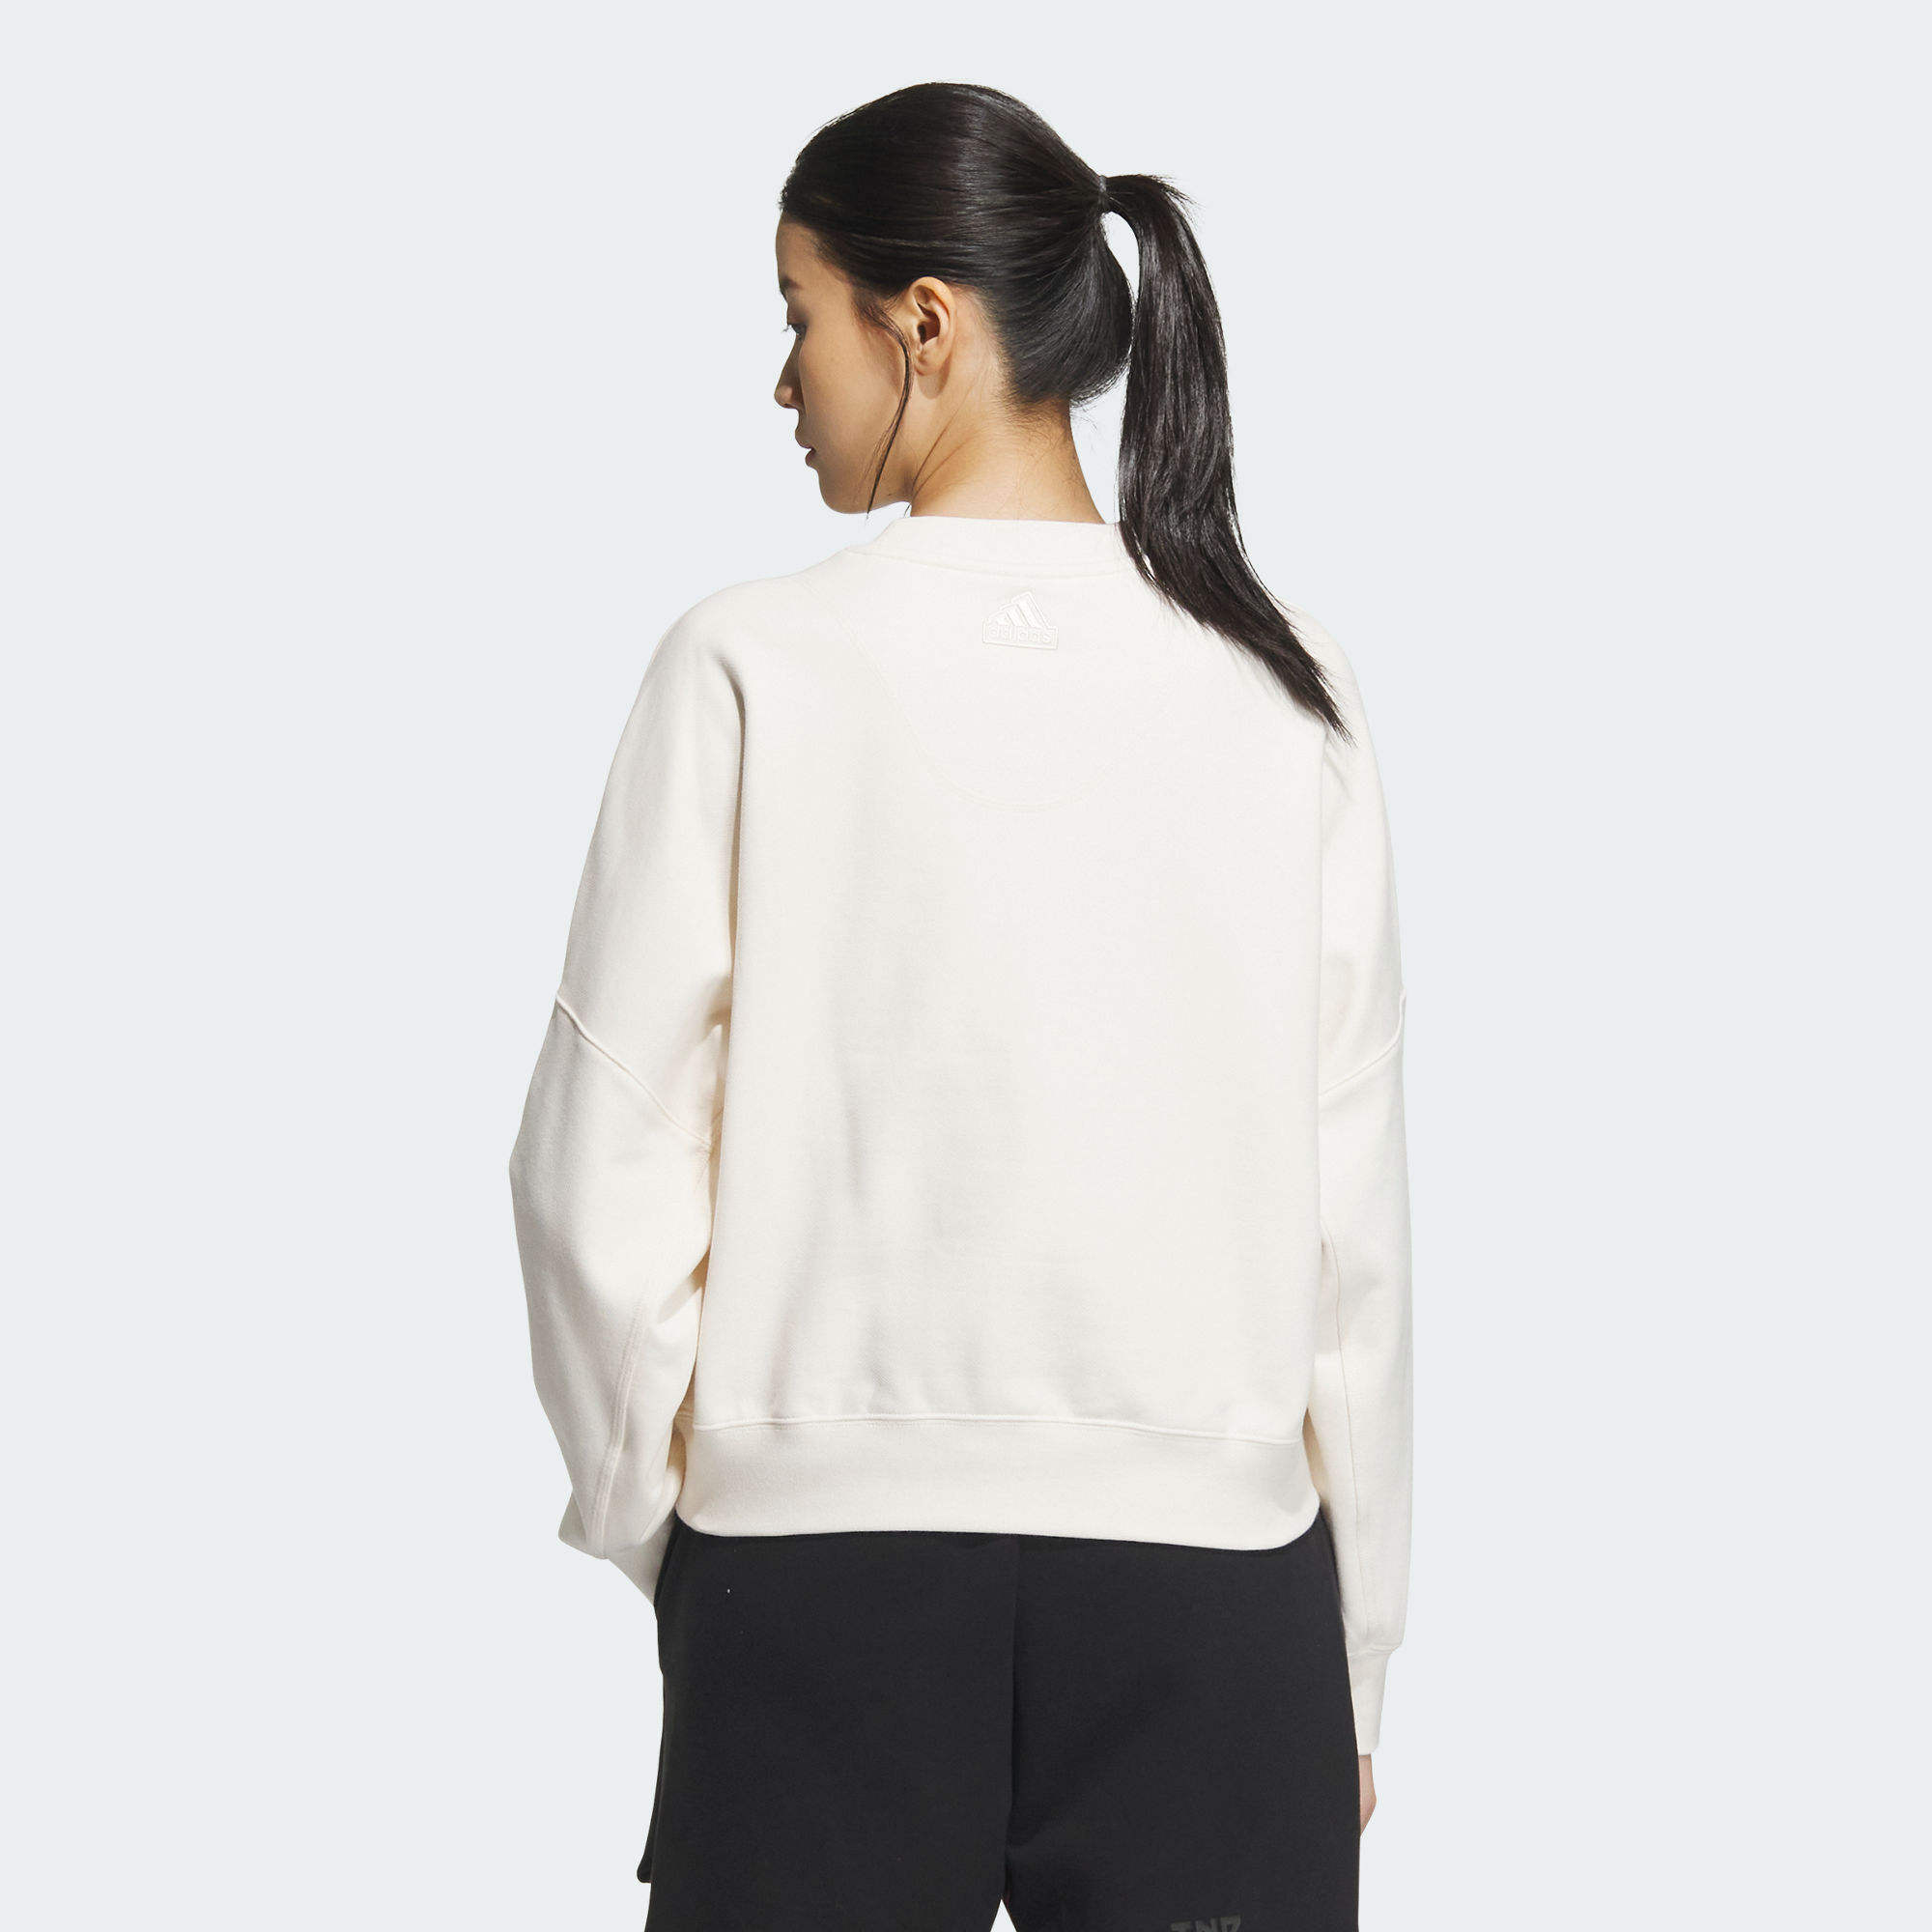 5MILES LOUNGE 柔軟衛衣布圓領衛衣- 白色| 女子| adidas(愛迪達)香港 